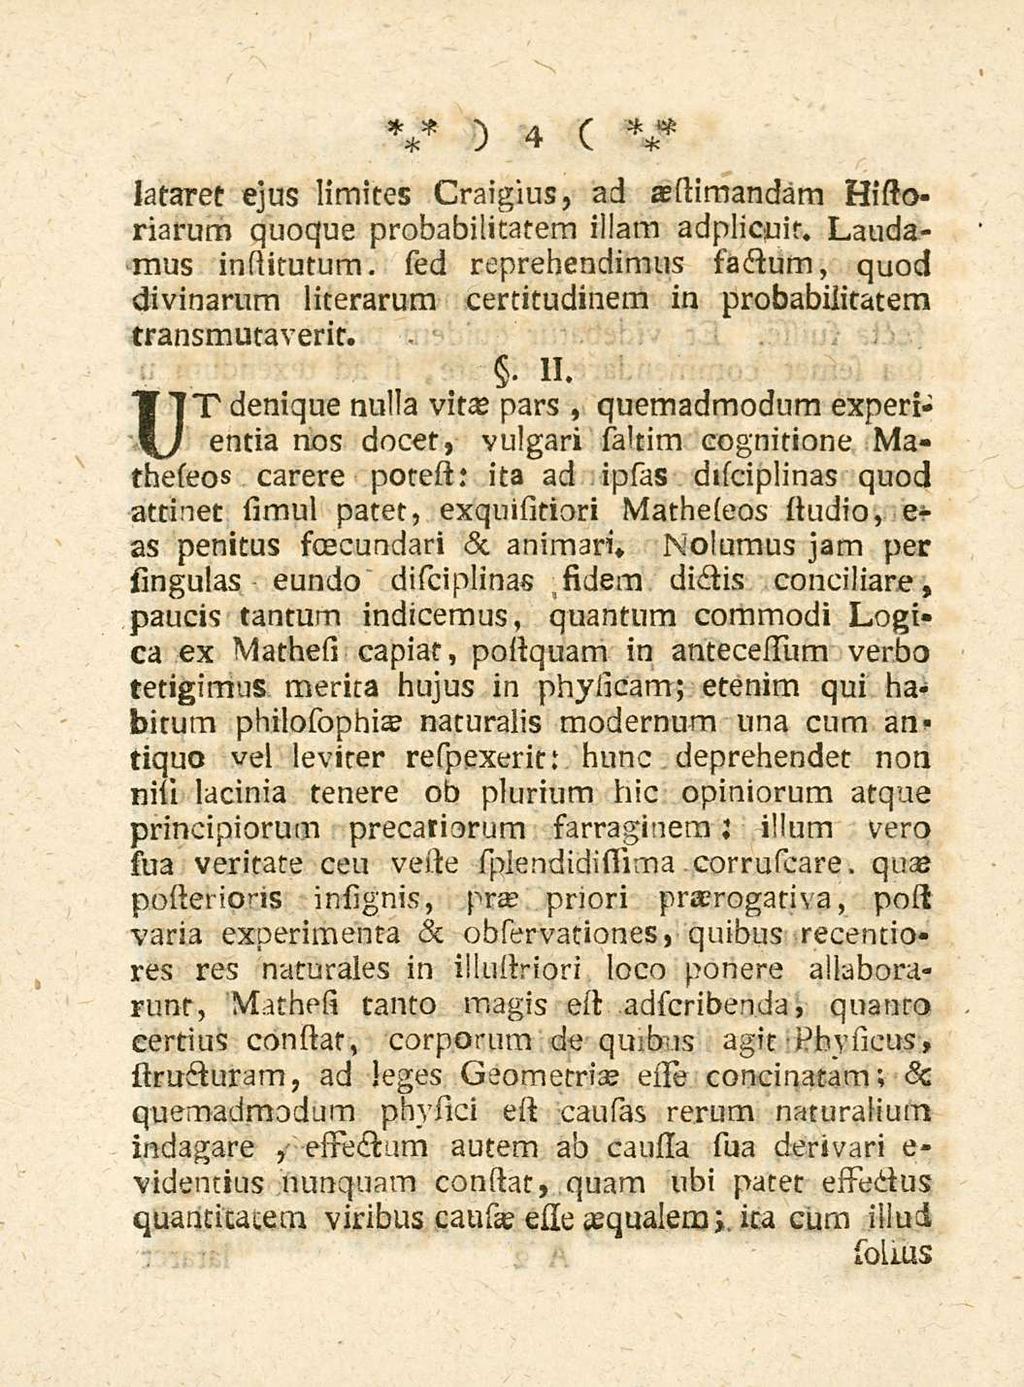 4 lataret ejus Iimites Craigius, ad aestimandam Historiarum quoque probabilitatem illam adplienit.